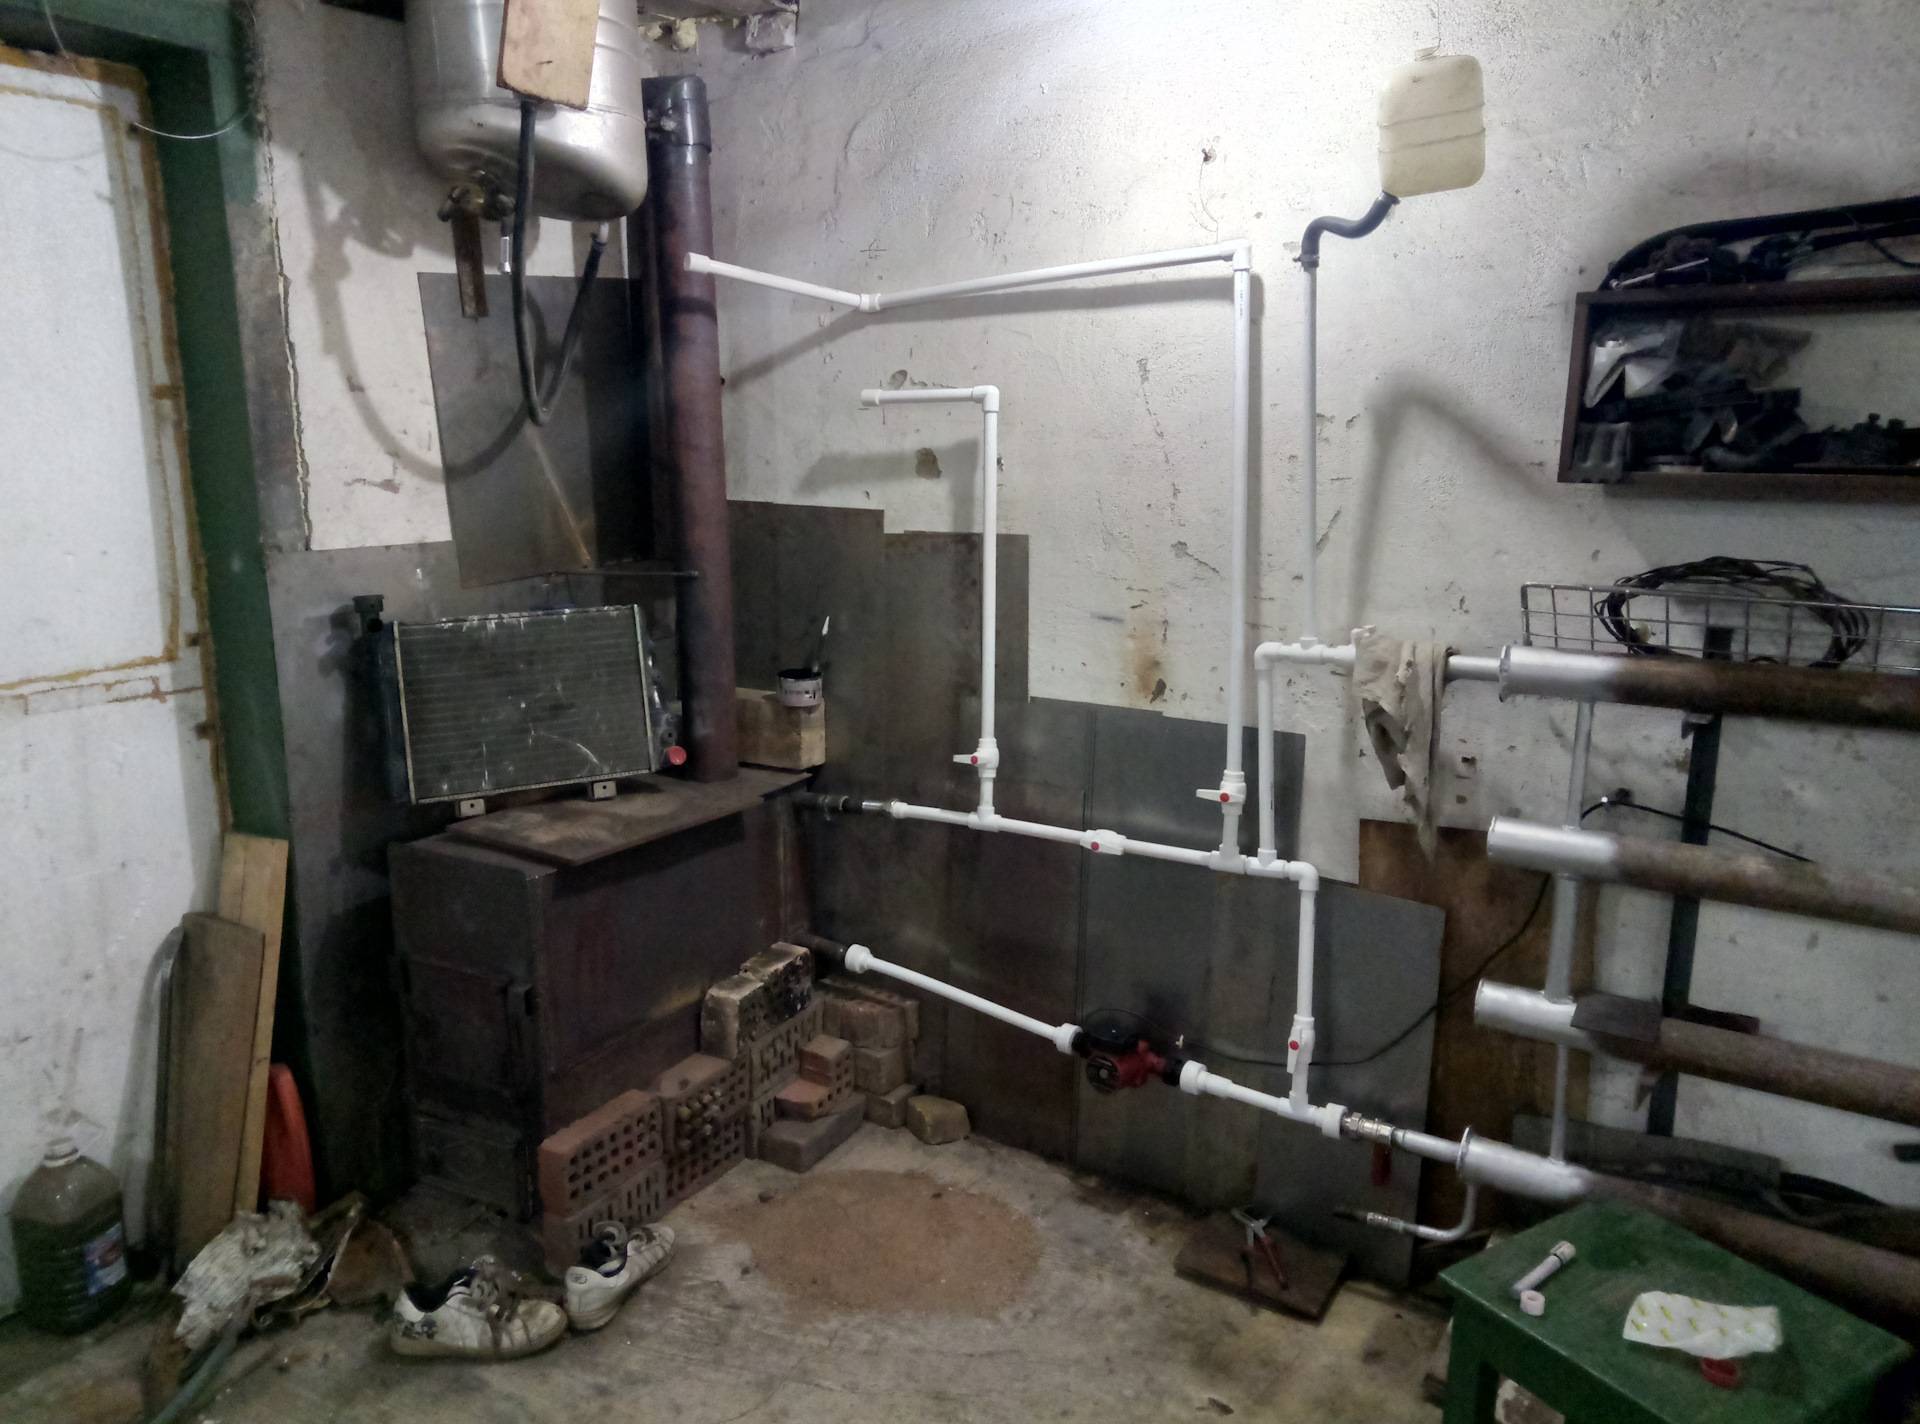 Как сделать отопление гаража: выбираем систему и отопительное оборудование - системы отопления